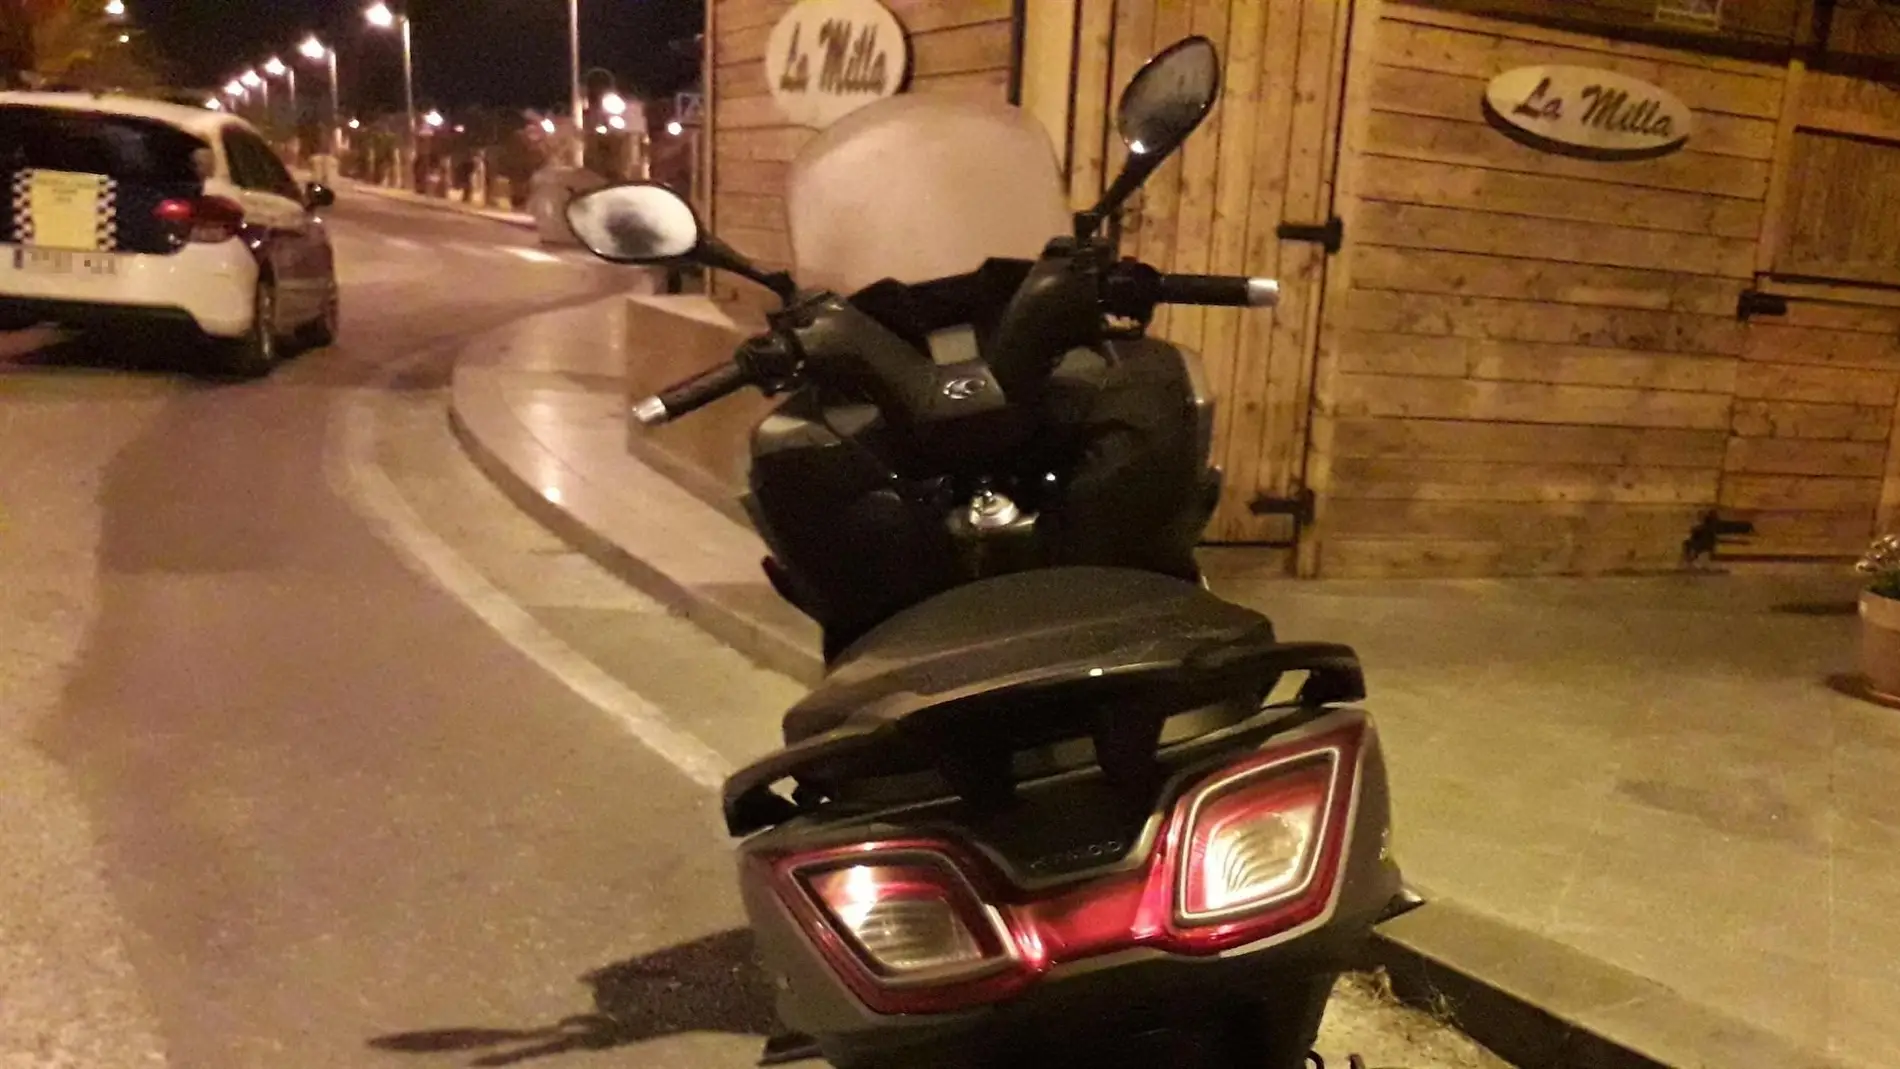 Motocicleta en la que circulaba el detenido por la Policía Local de Elche.